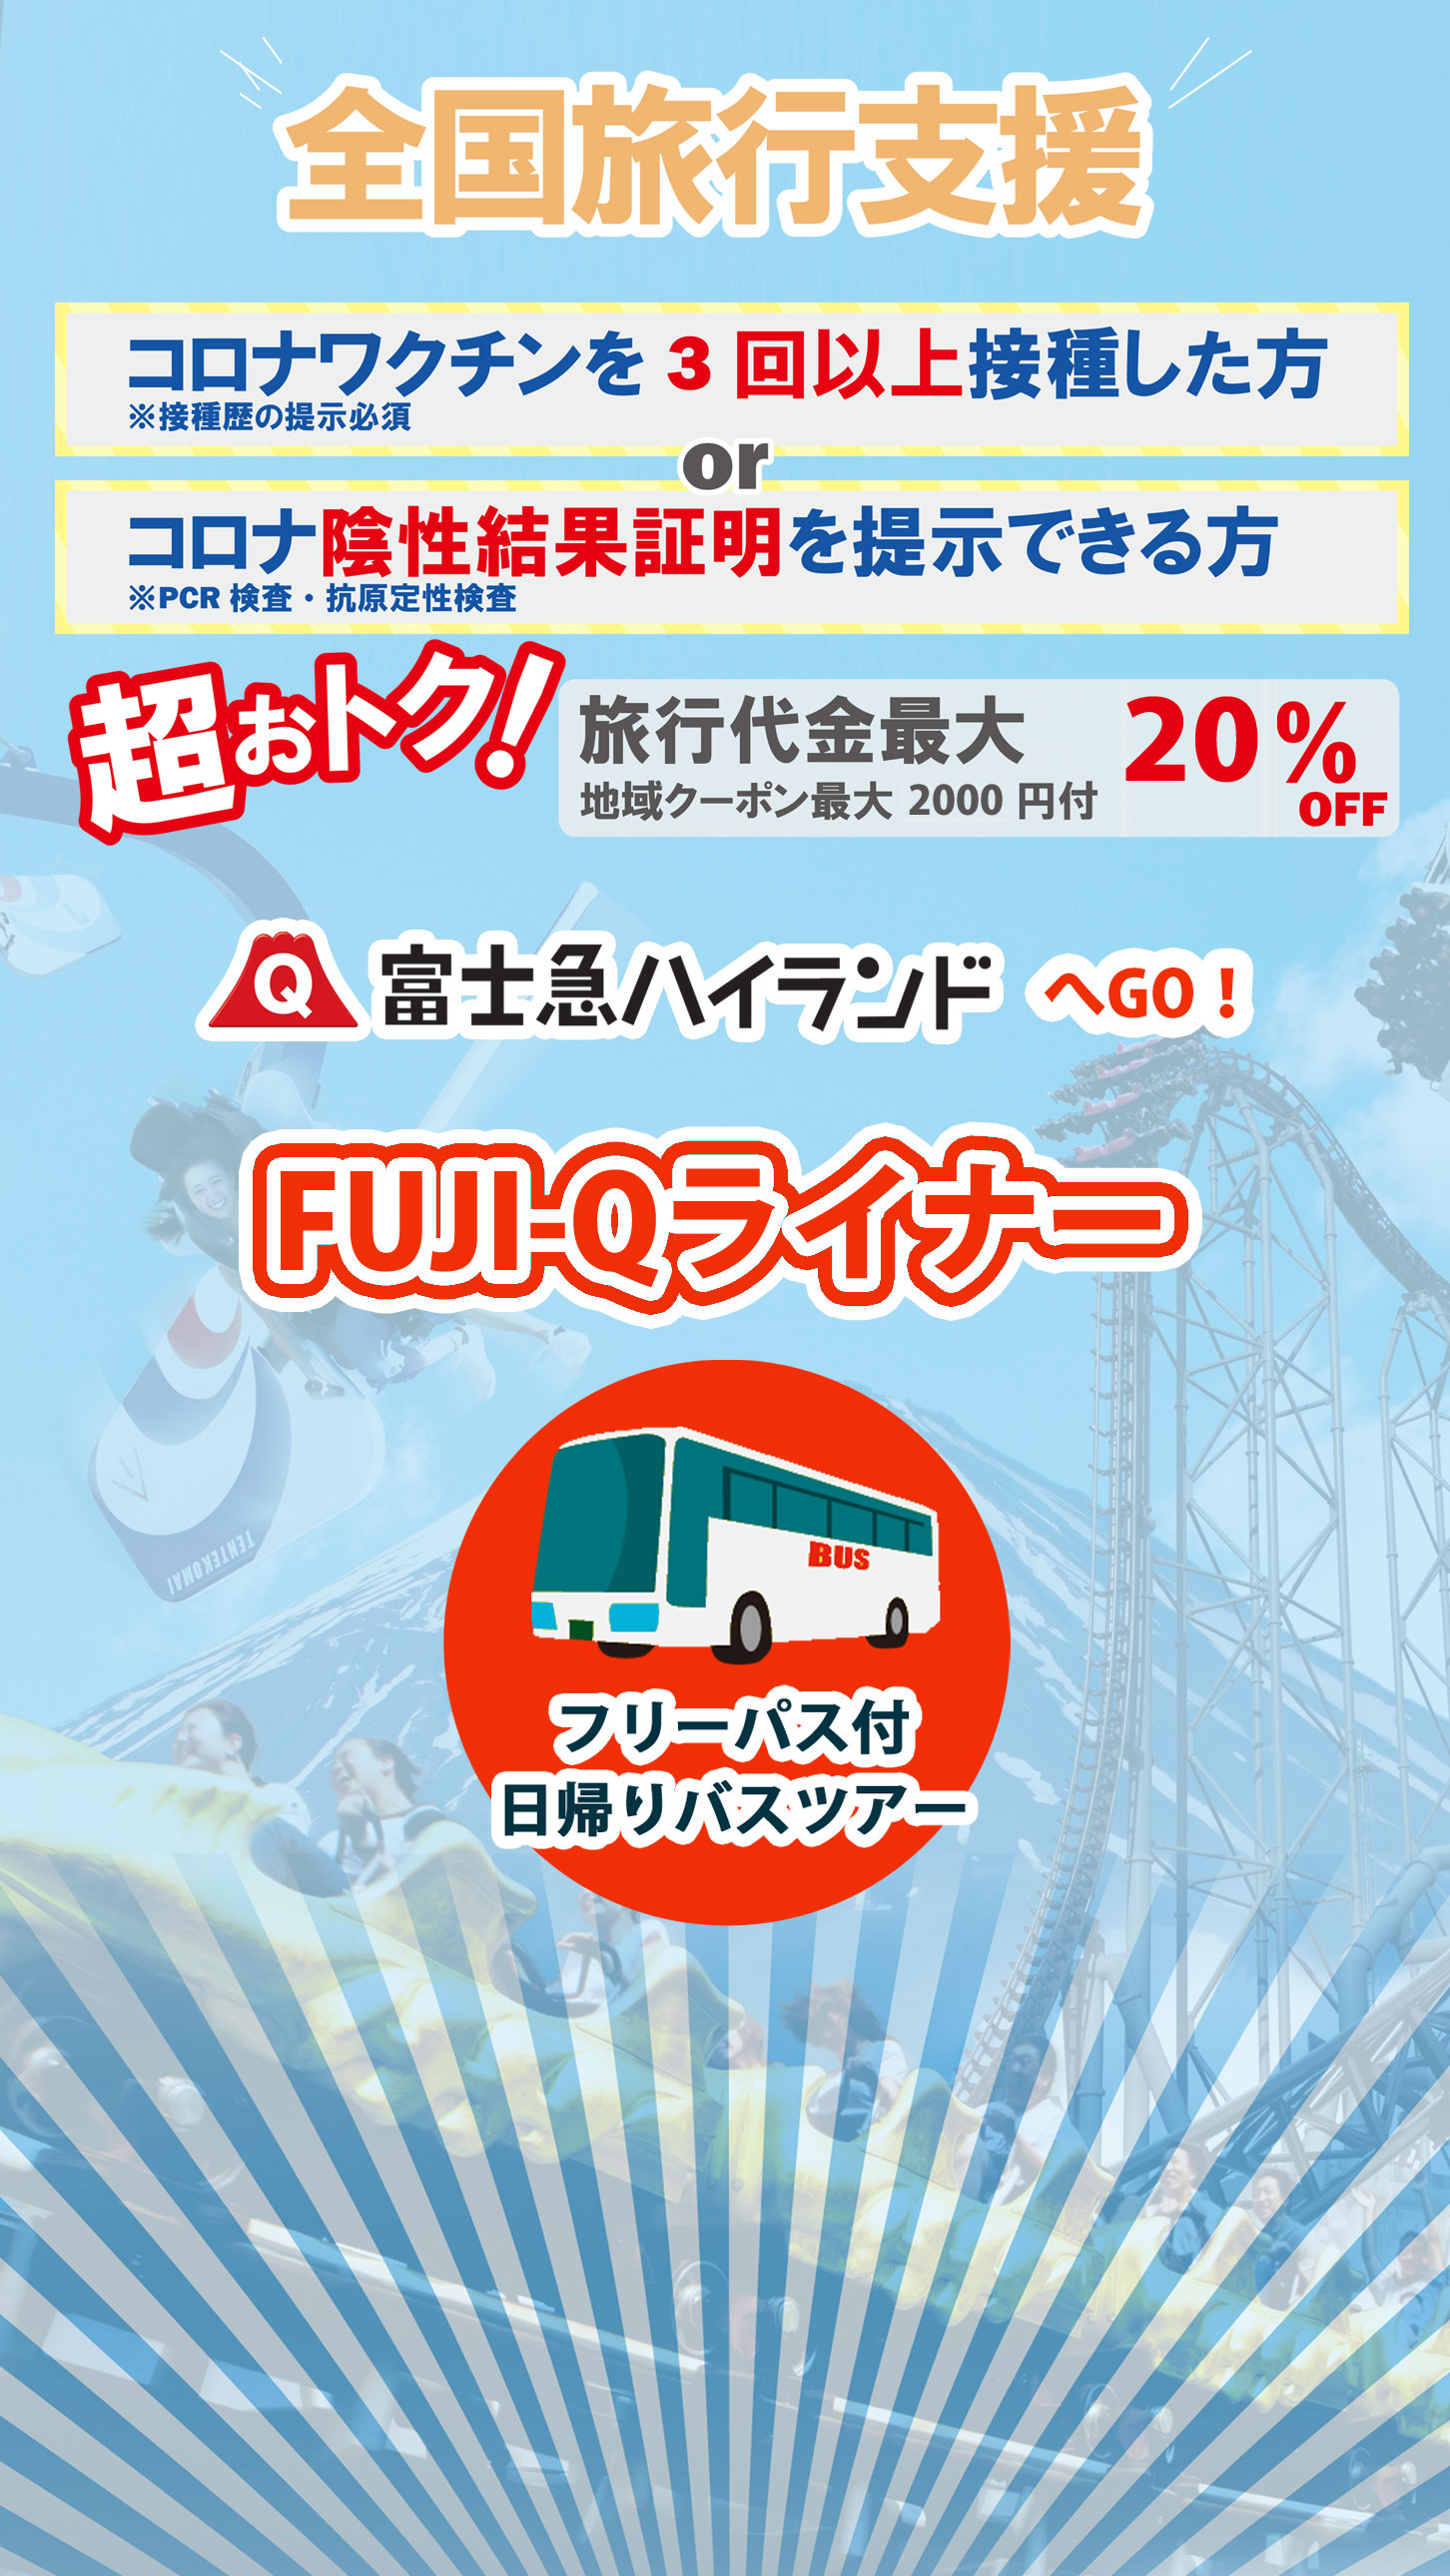 03 3 Fuji Qライナー 全国旅行支援キャンペーン 富士急トラベル株式会社